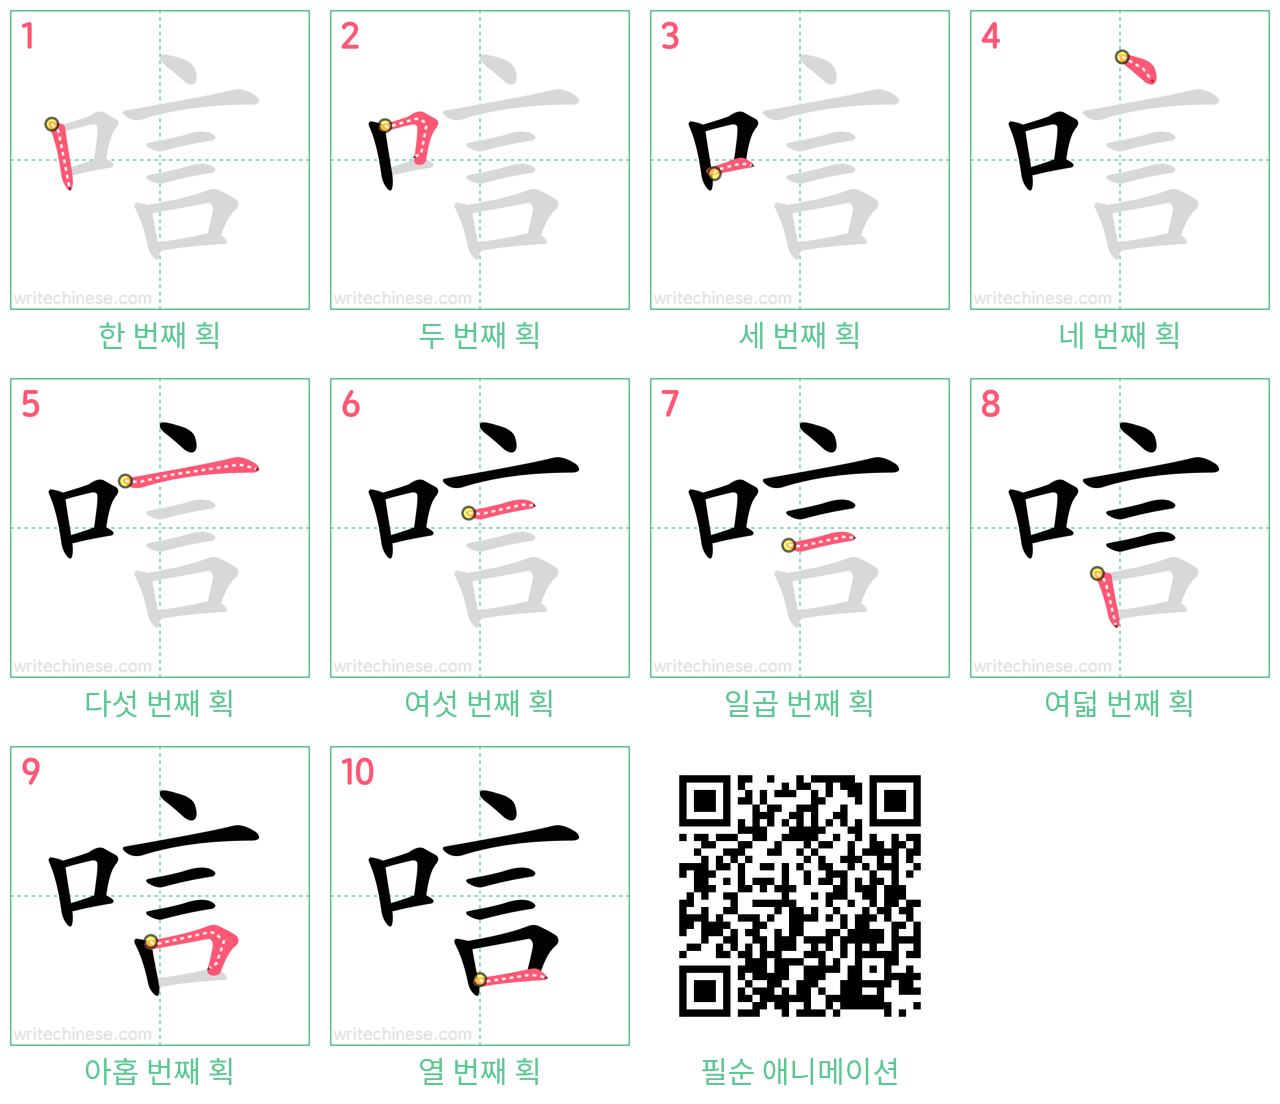 唁 step-by-step stroke order diagrams